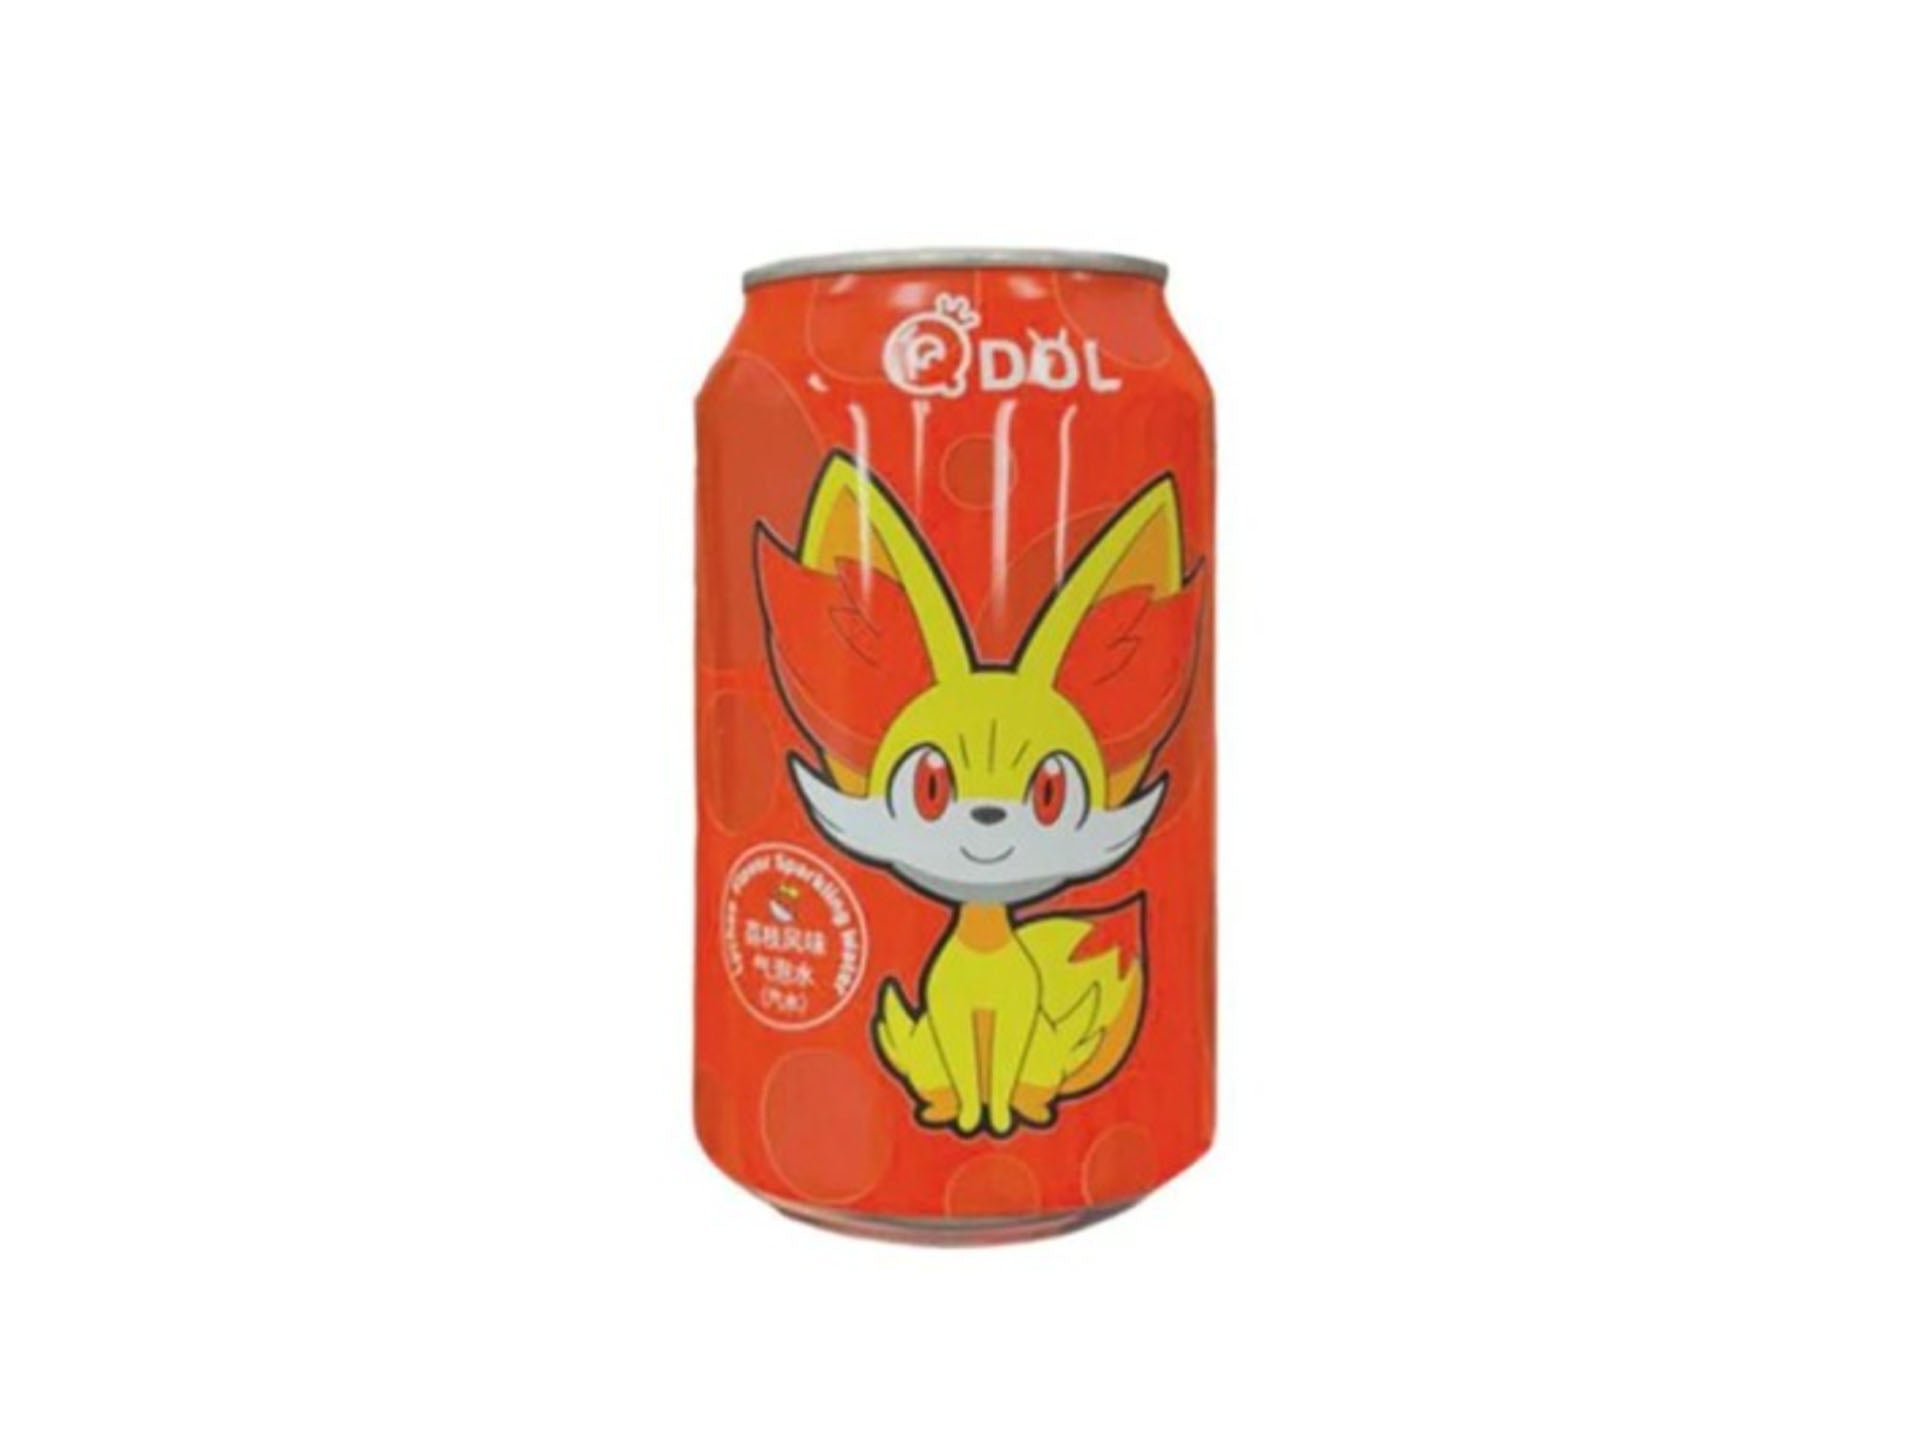 Pokémon Sparkling water - Lychee Flavor (330ml)